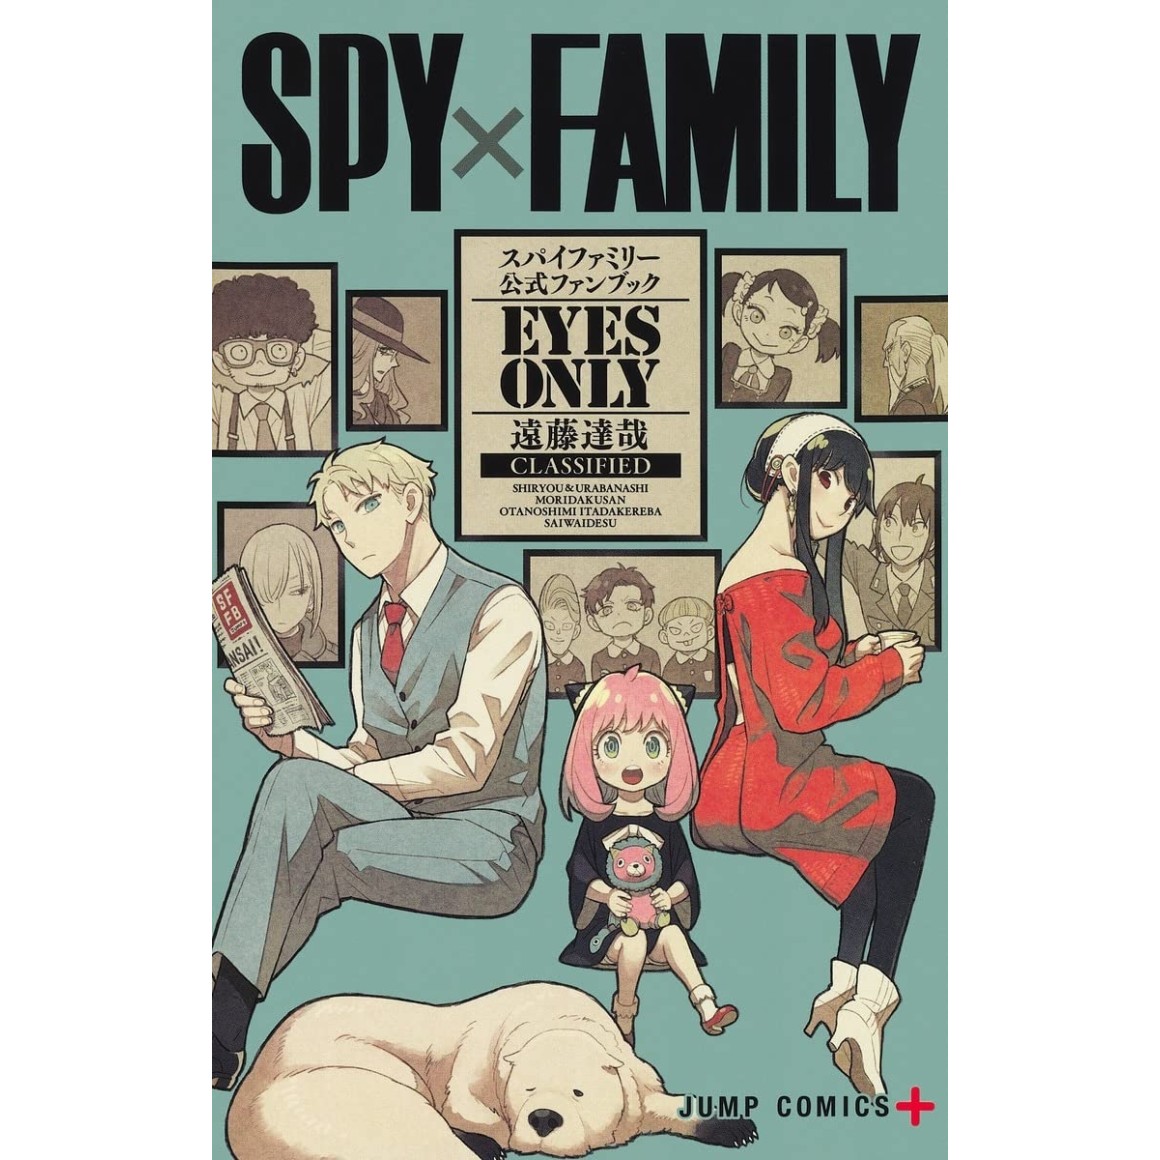 Spy x Family e as Mentiras Genuínas - Quadro X Quadro